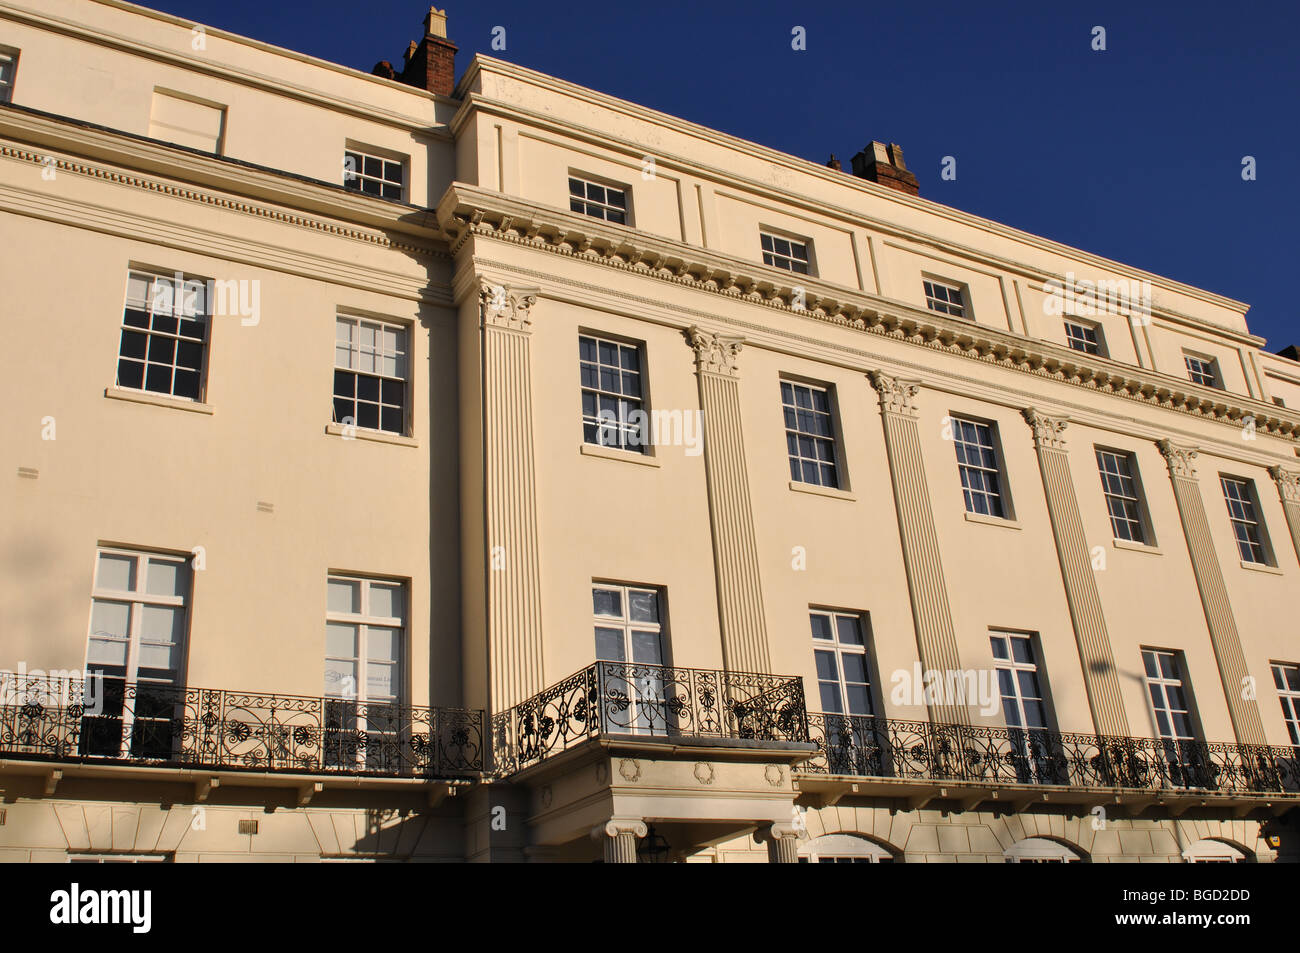 Les bâtiments de style Régence, Waterloo Place, Leamington Spa, Warwickshire, England, UK Banque D'Images